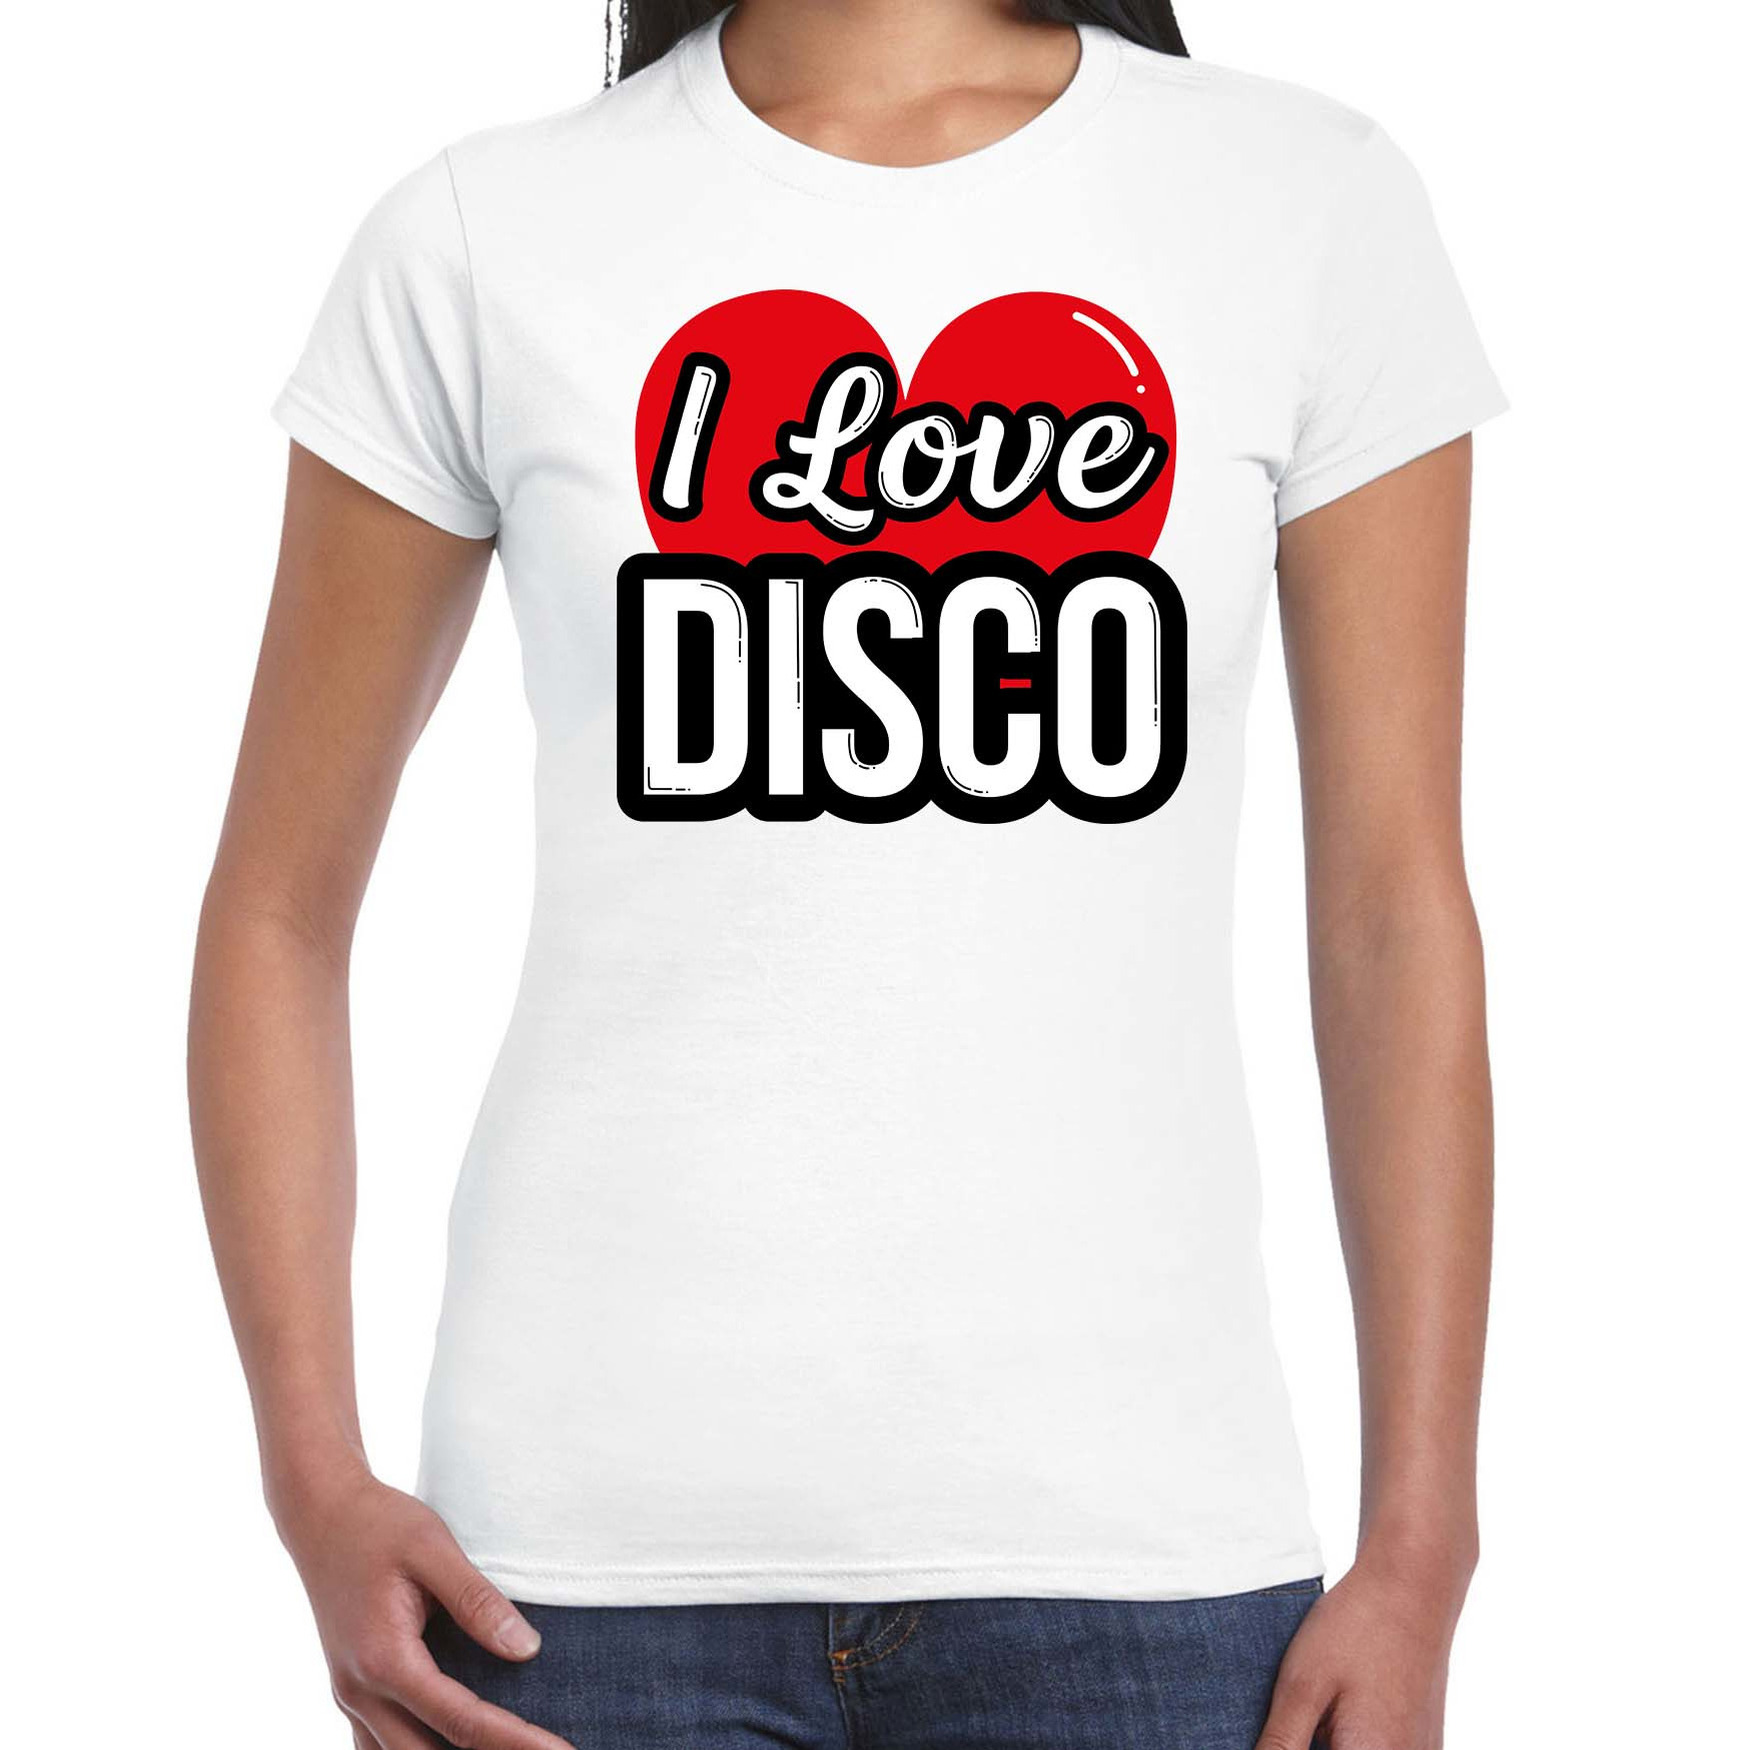 I love disco verkleed t-shirt wit voor dames Disco party verkleed outfit